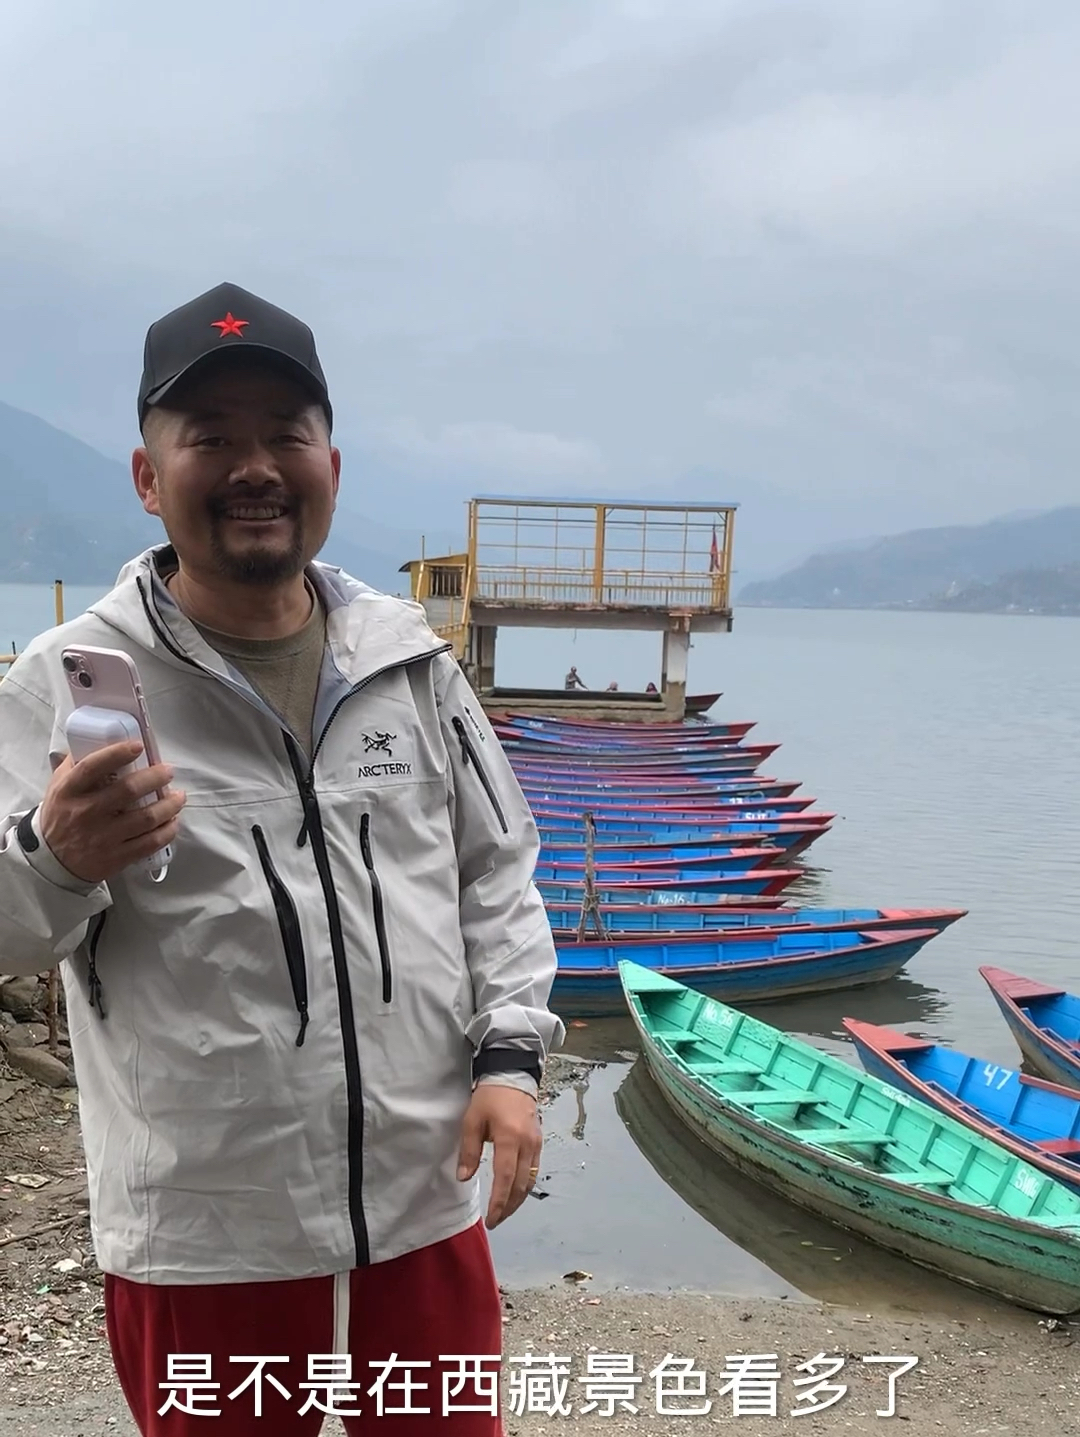 尼泊尔博卡拉费瓦湖和别人拍的不一样呢